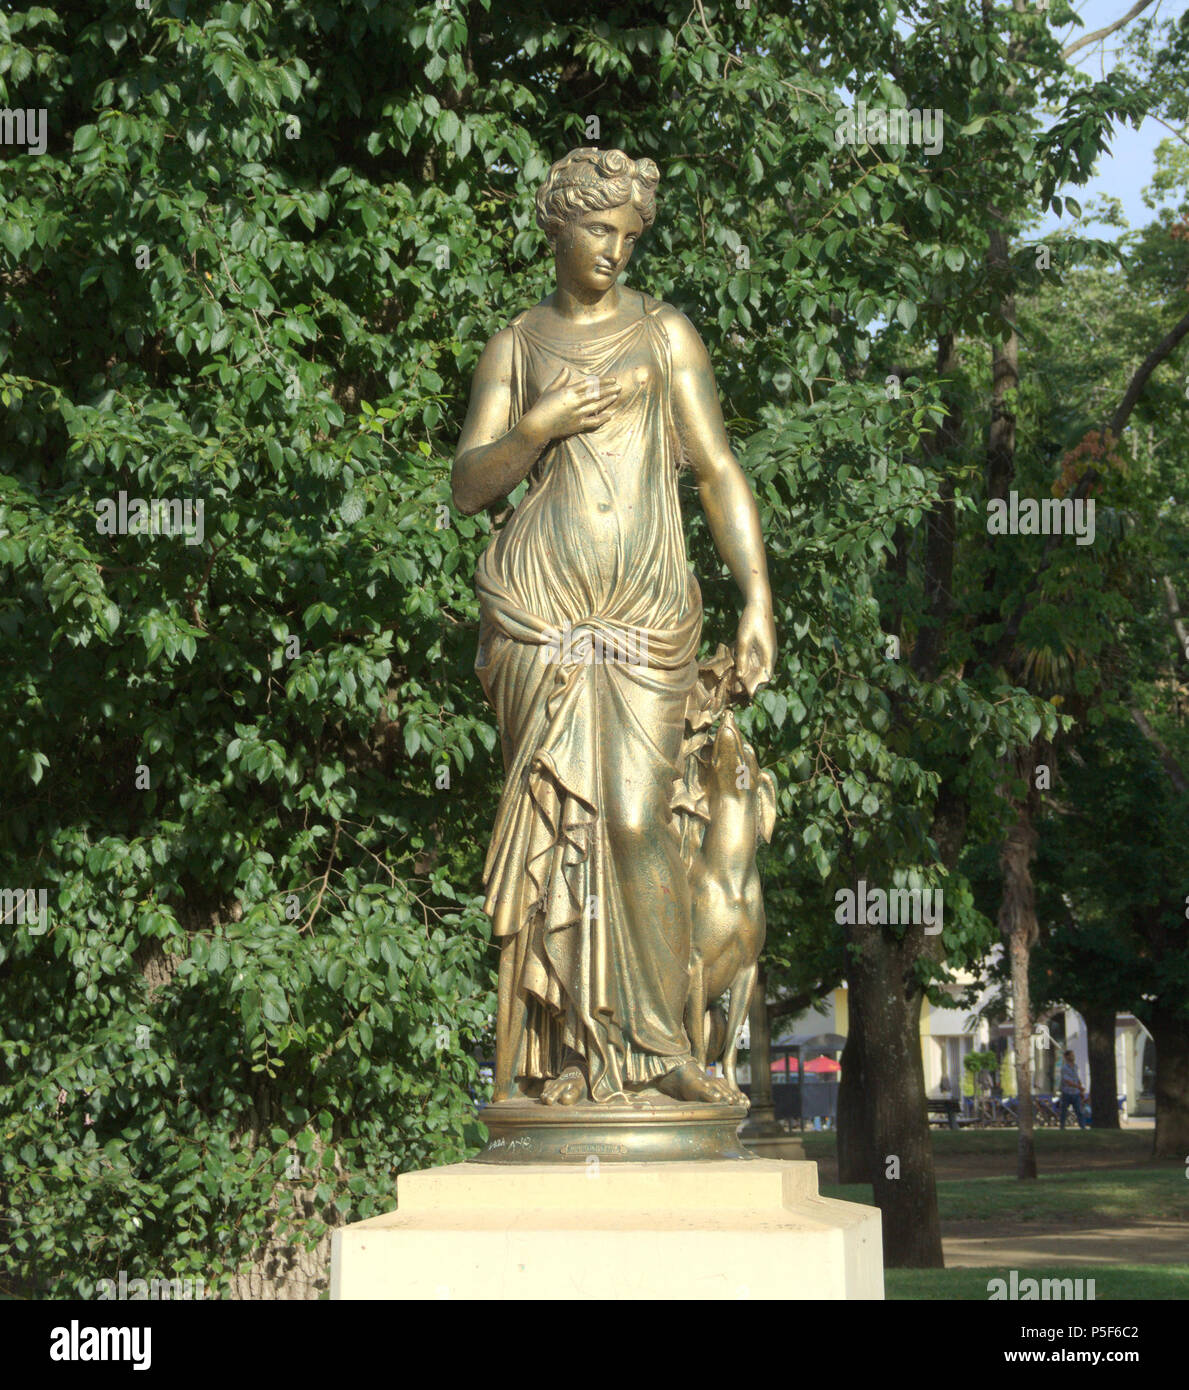 N/A. Español: una estatua de la diosa Victoria en la Plaza de la  Independencia, Tandil, Argentina English: Estatua de Dios Victoria, Plaza  Independencia, Tandil, Argentina . 23 de diciembre de 2015, 19:51:36.